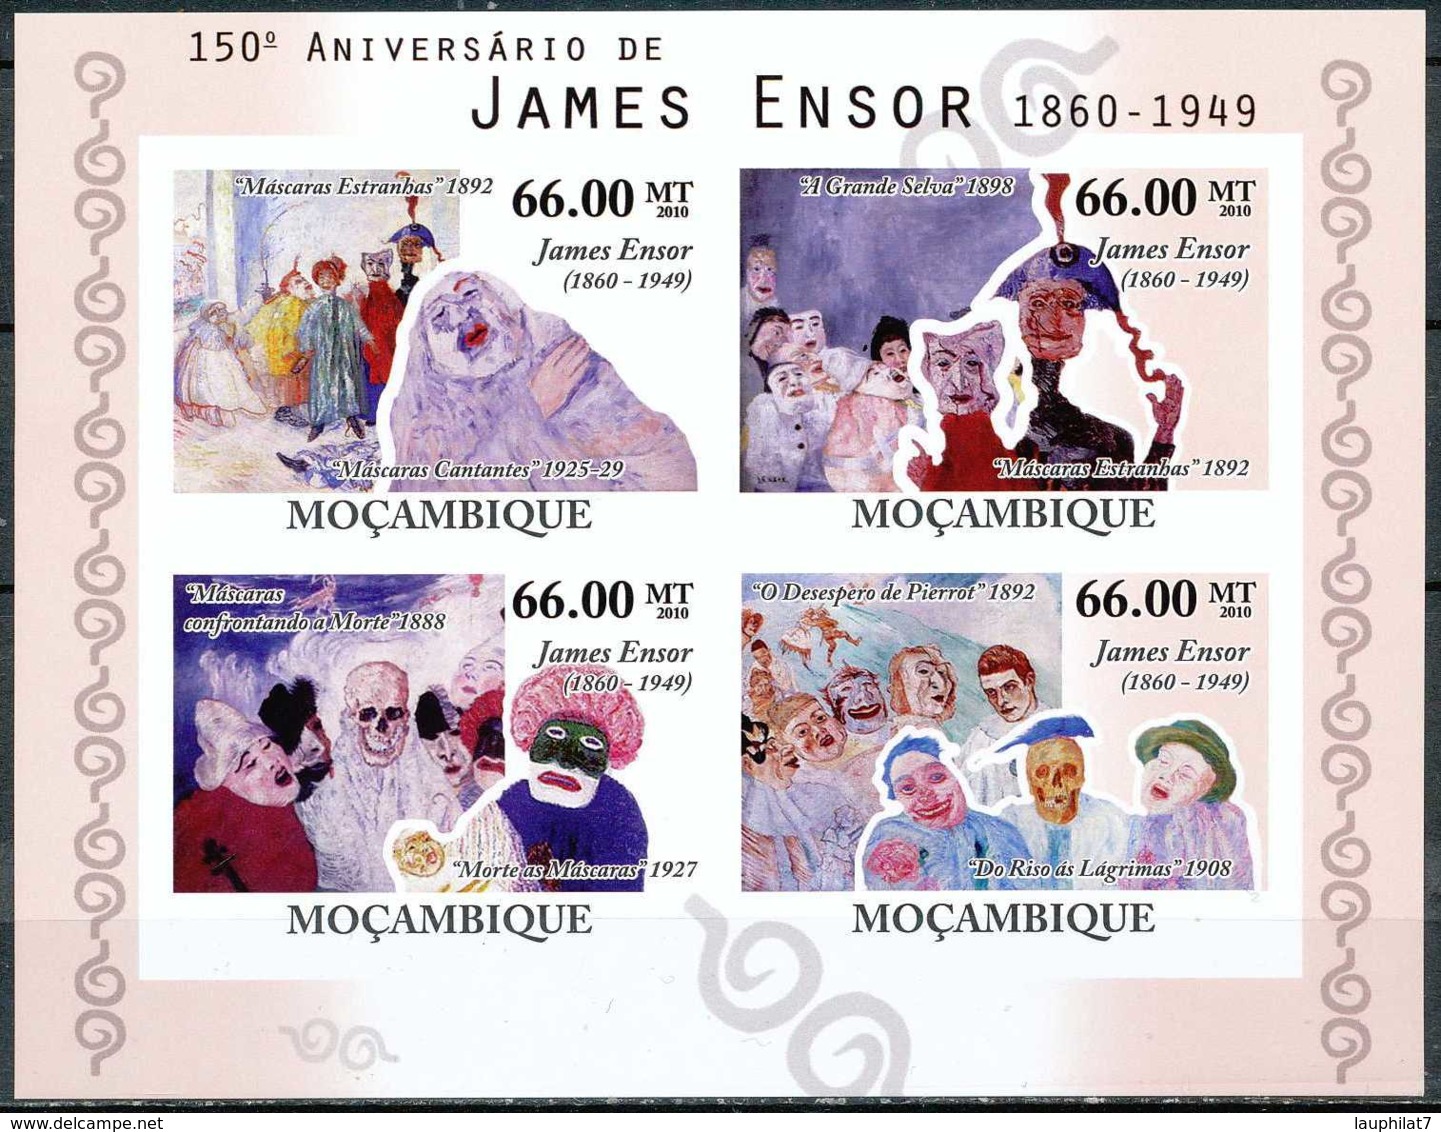 [34397]N° 3444/47, Mozambique - ND/imperf - Personnalite, James Ensor, Arsiste-peintre Belge, Details De Tableaux, Masqu - Mozambique